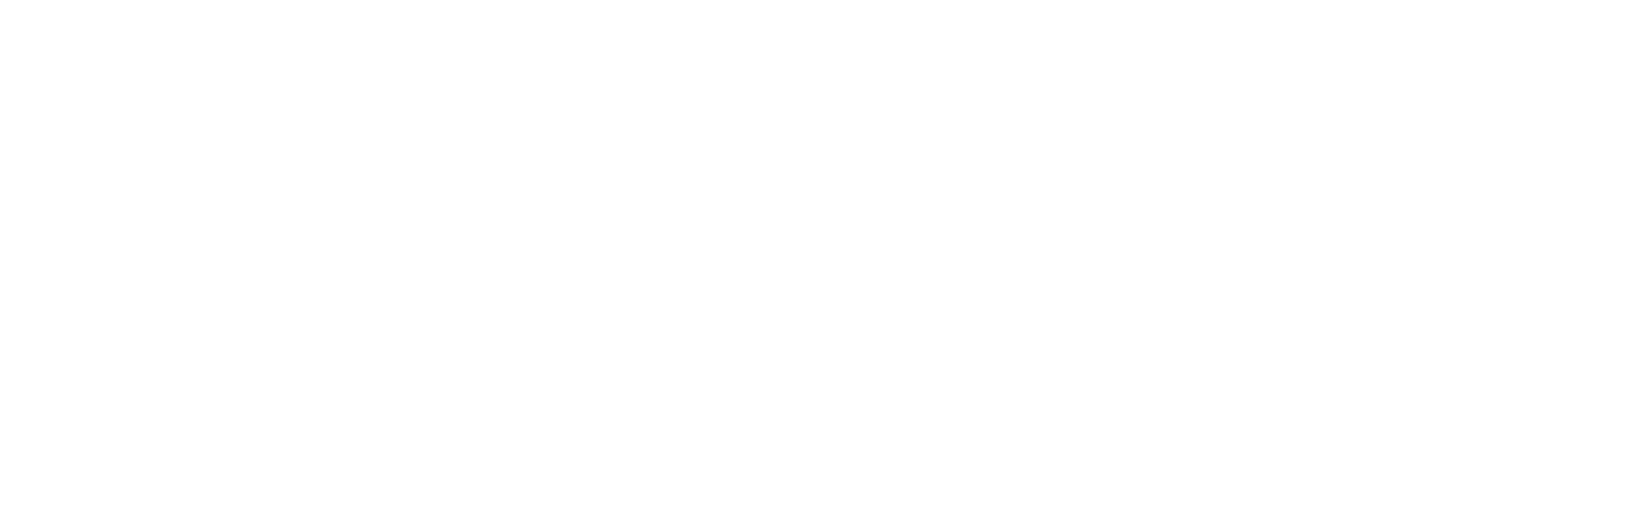 Tacodor_logo